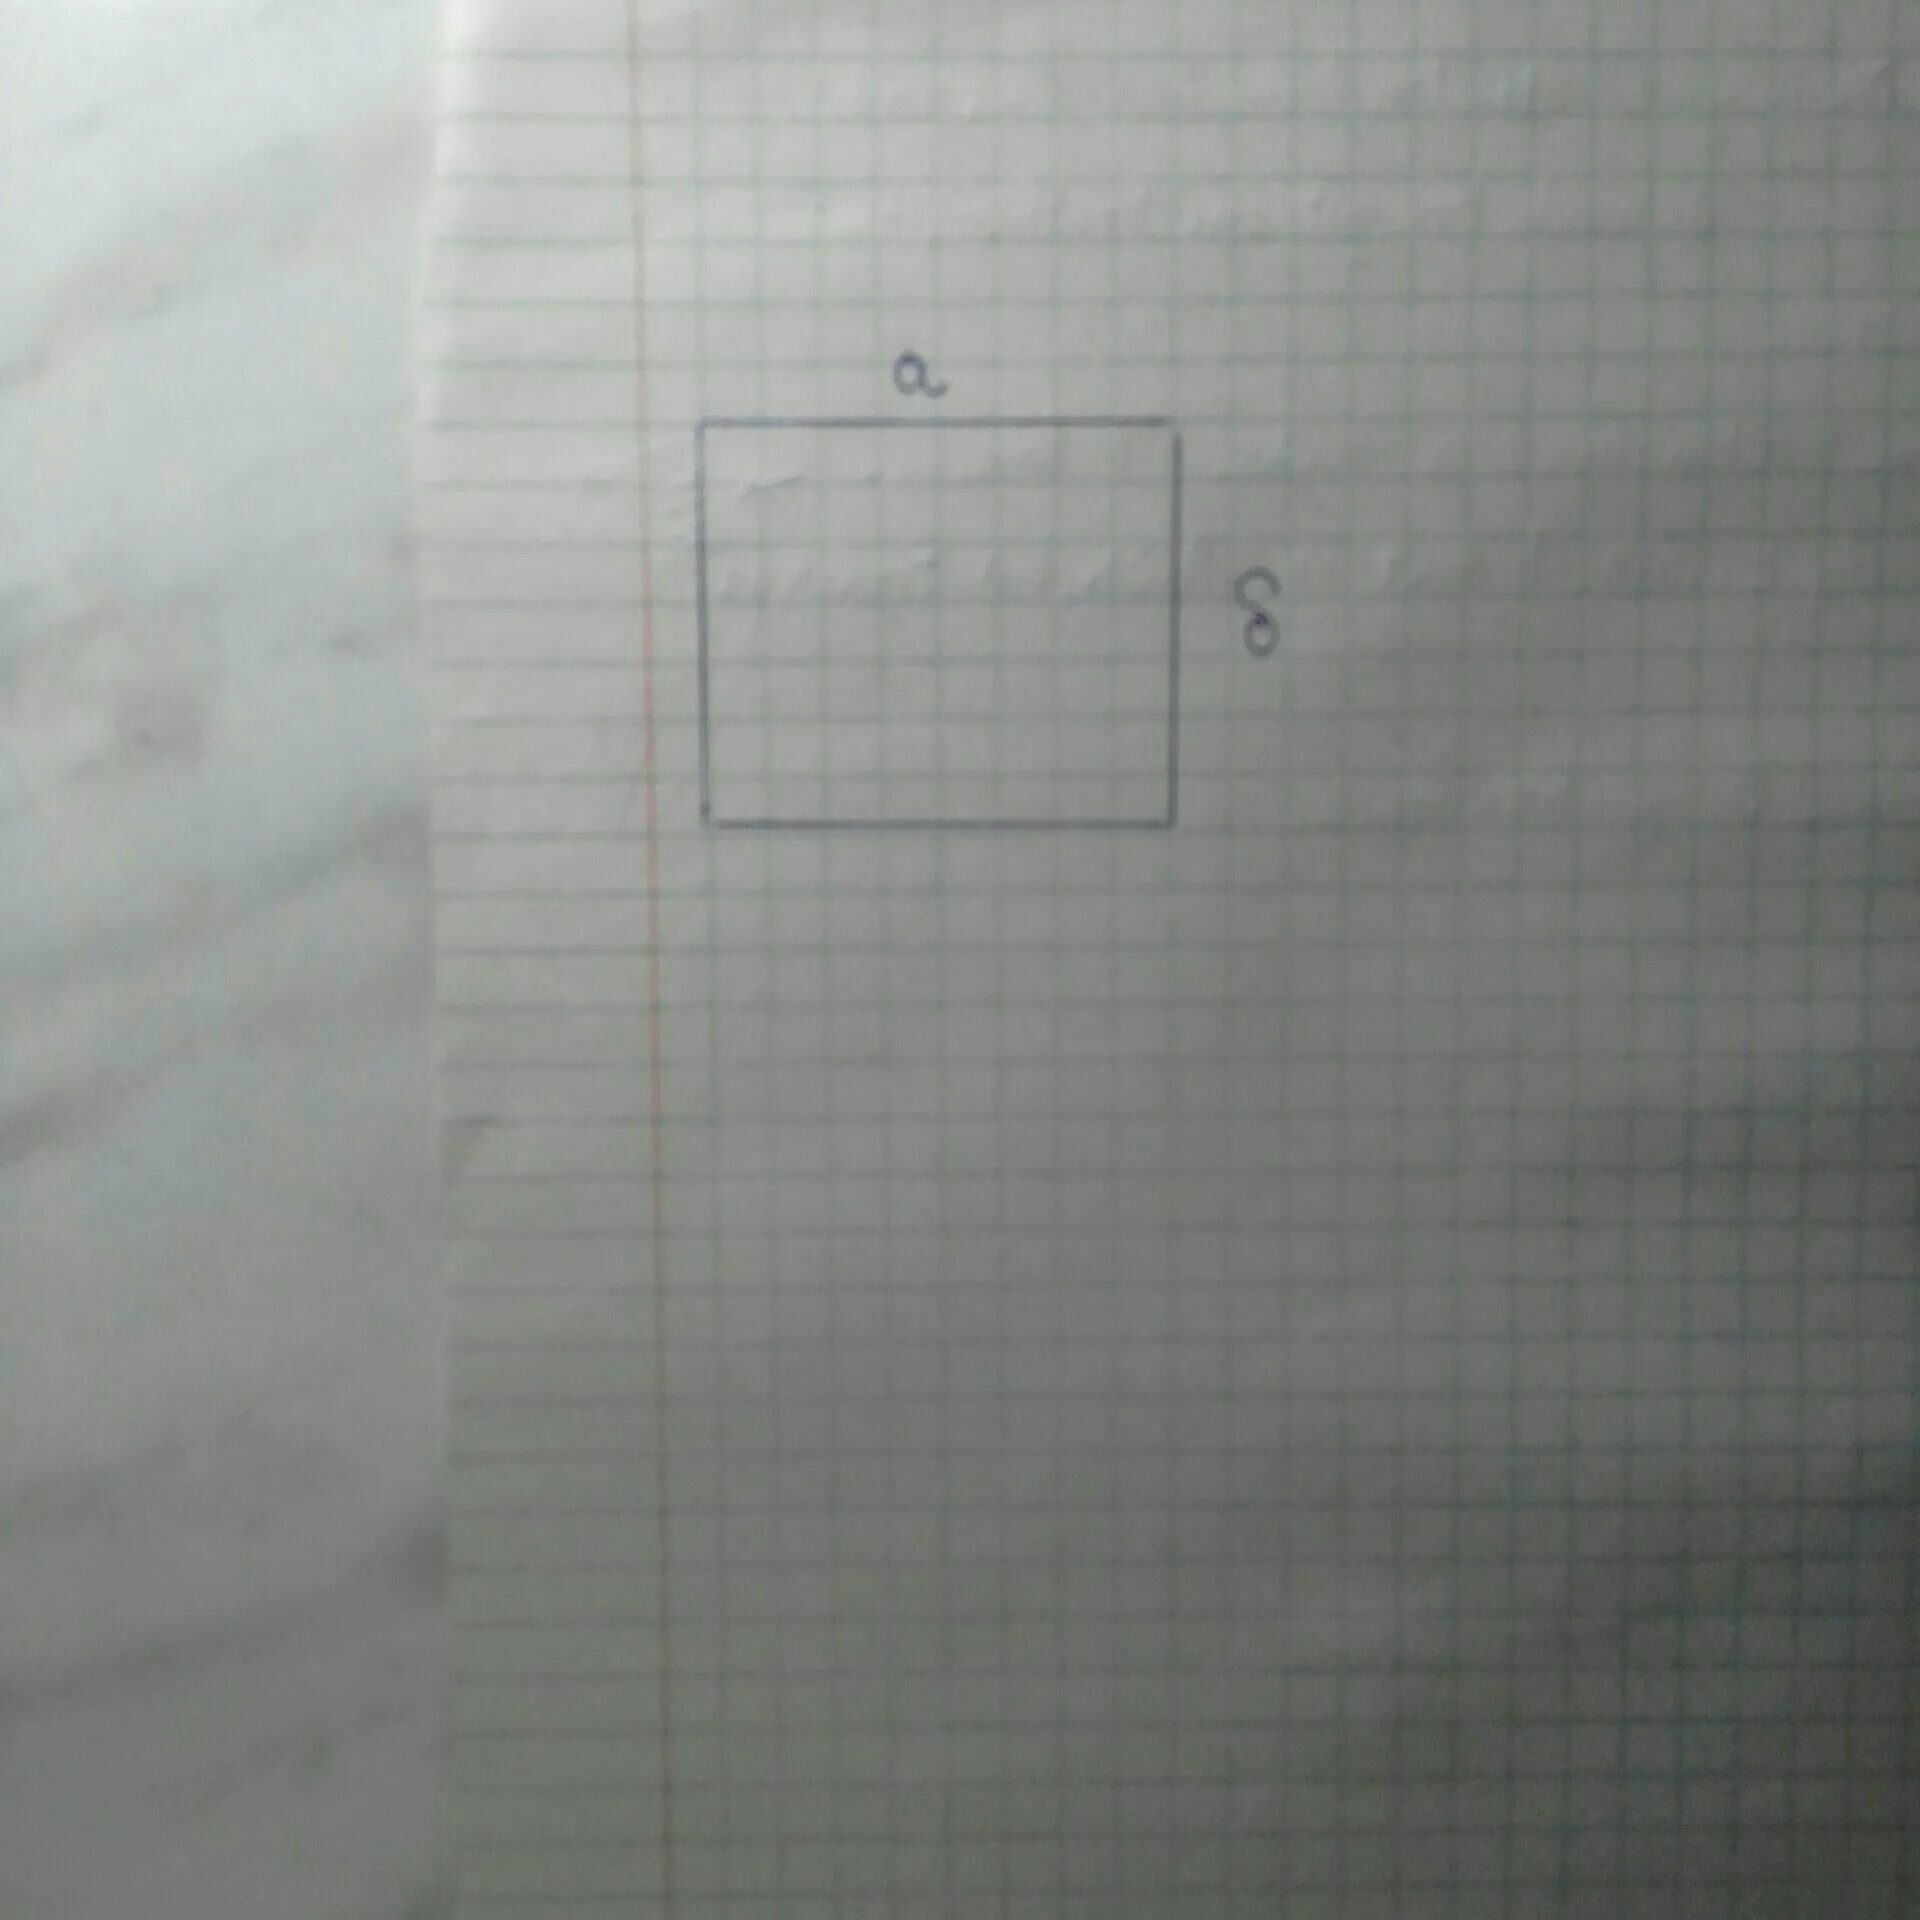 Квадрат со стороной 34 мм. Постройки квадрат со стороной 34 мм. Квадрат со стороной а. Постройте в тетради квадрат со стороной 4 сантиметра 4 сантиметра. Квадрат со стороной 25 миллиметров